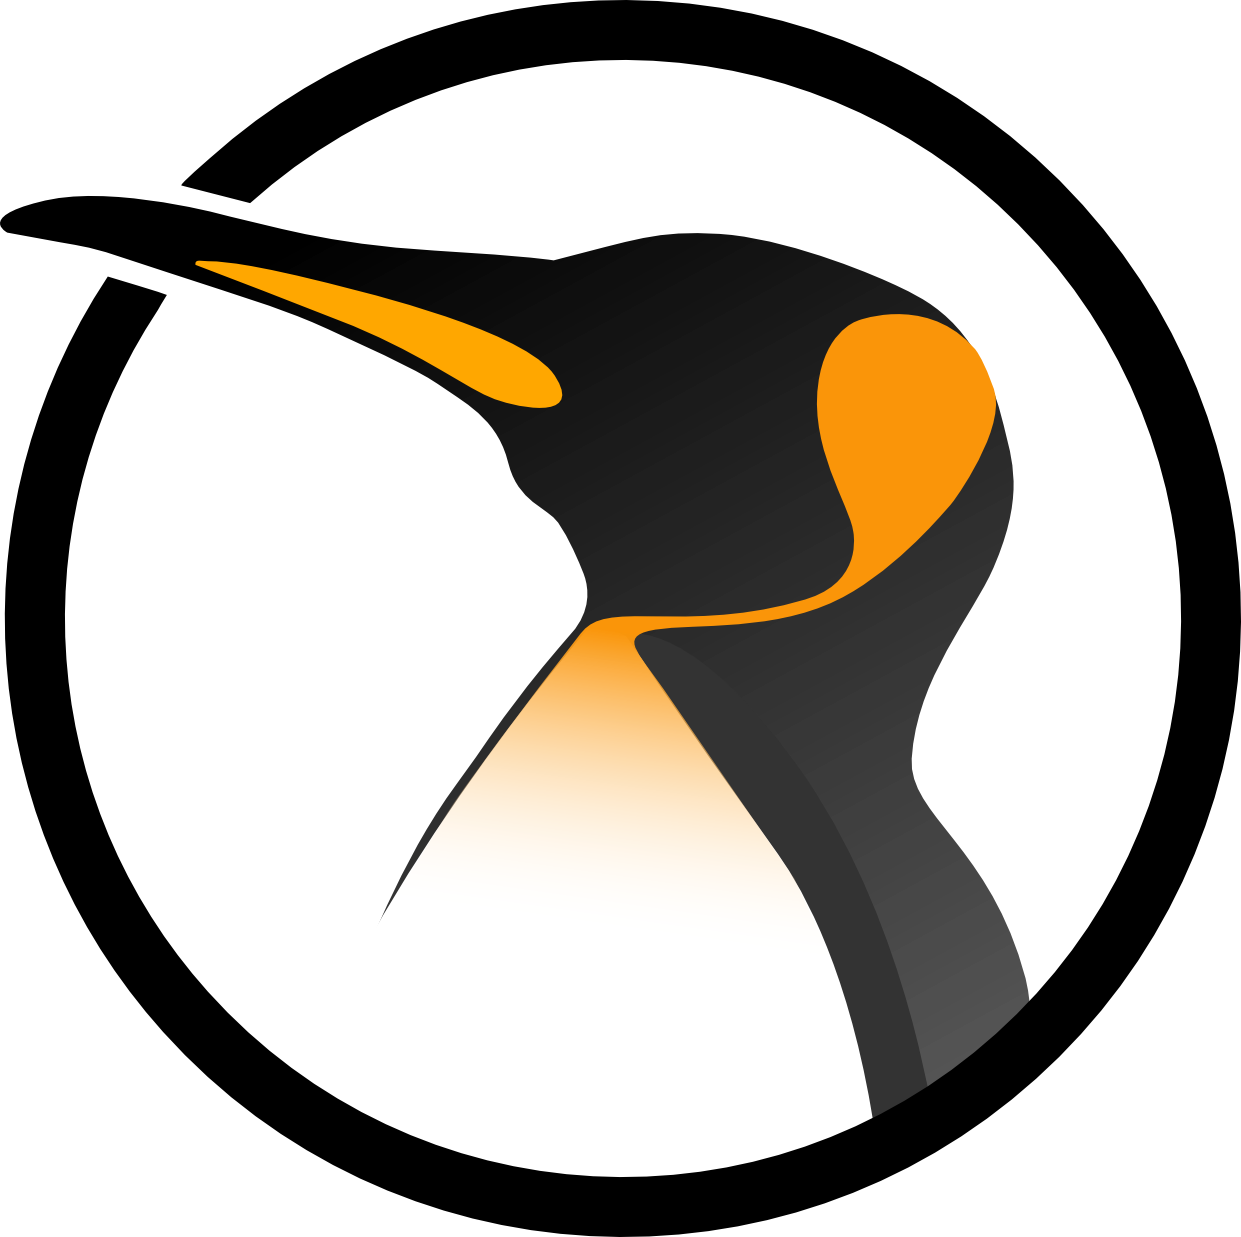 Tux Kernel Computer Linux Logo Software PNG Image